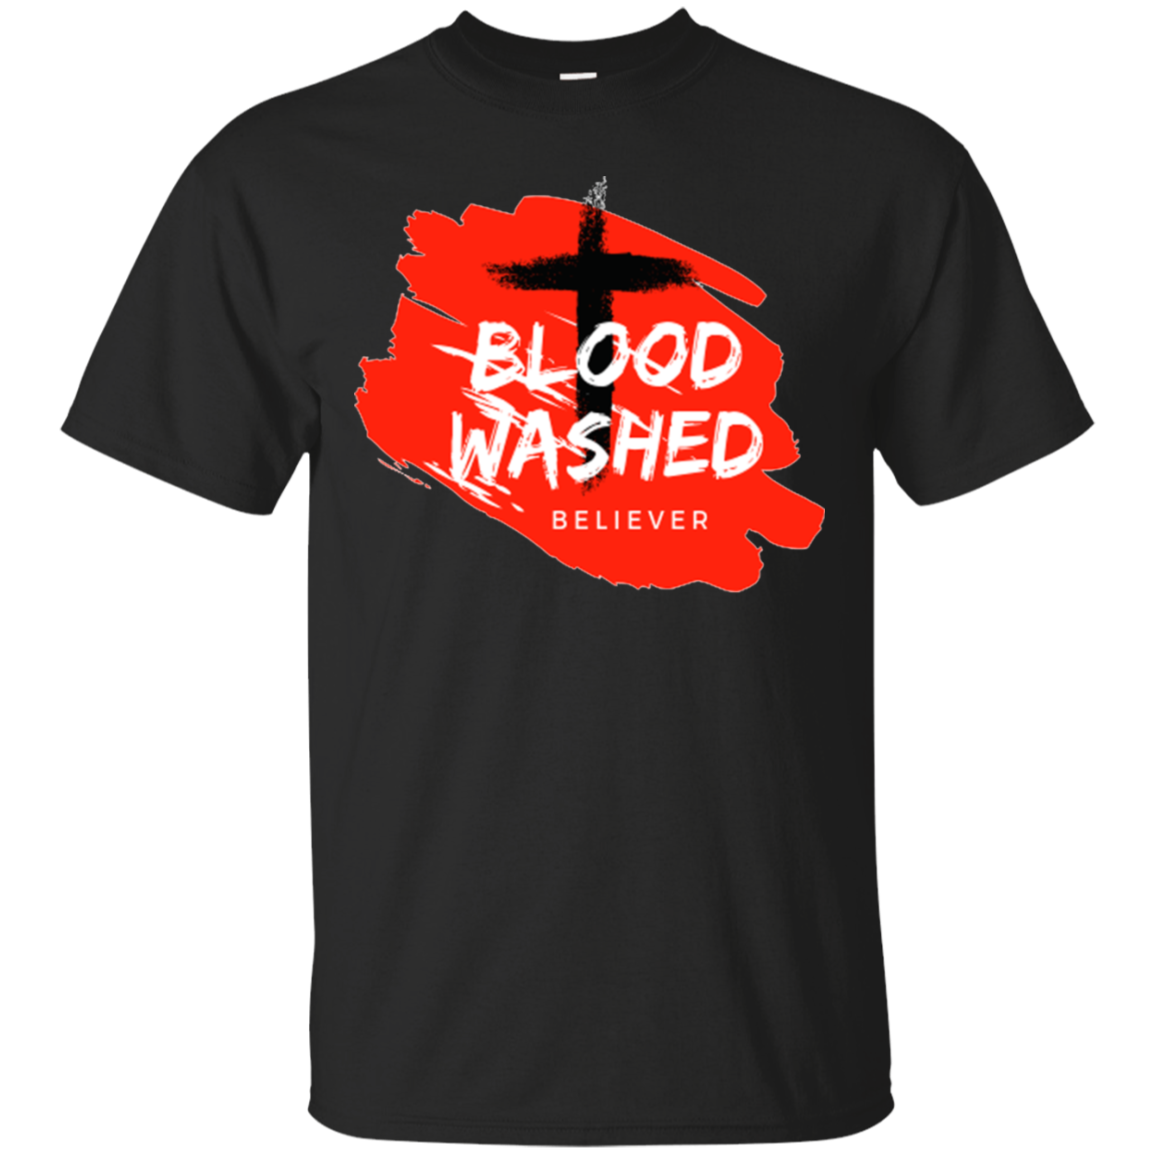 Blood Washed Believer Tees & Hoodies